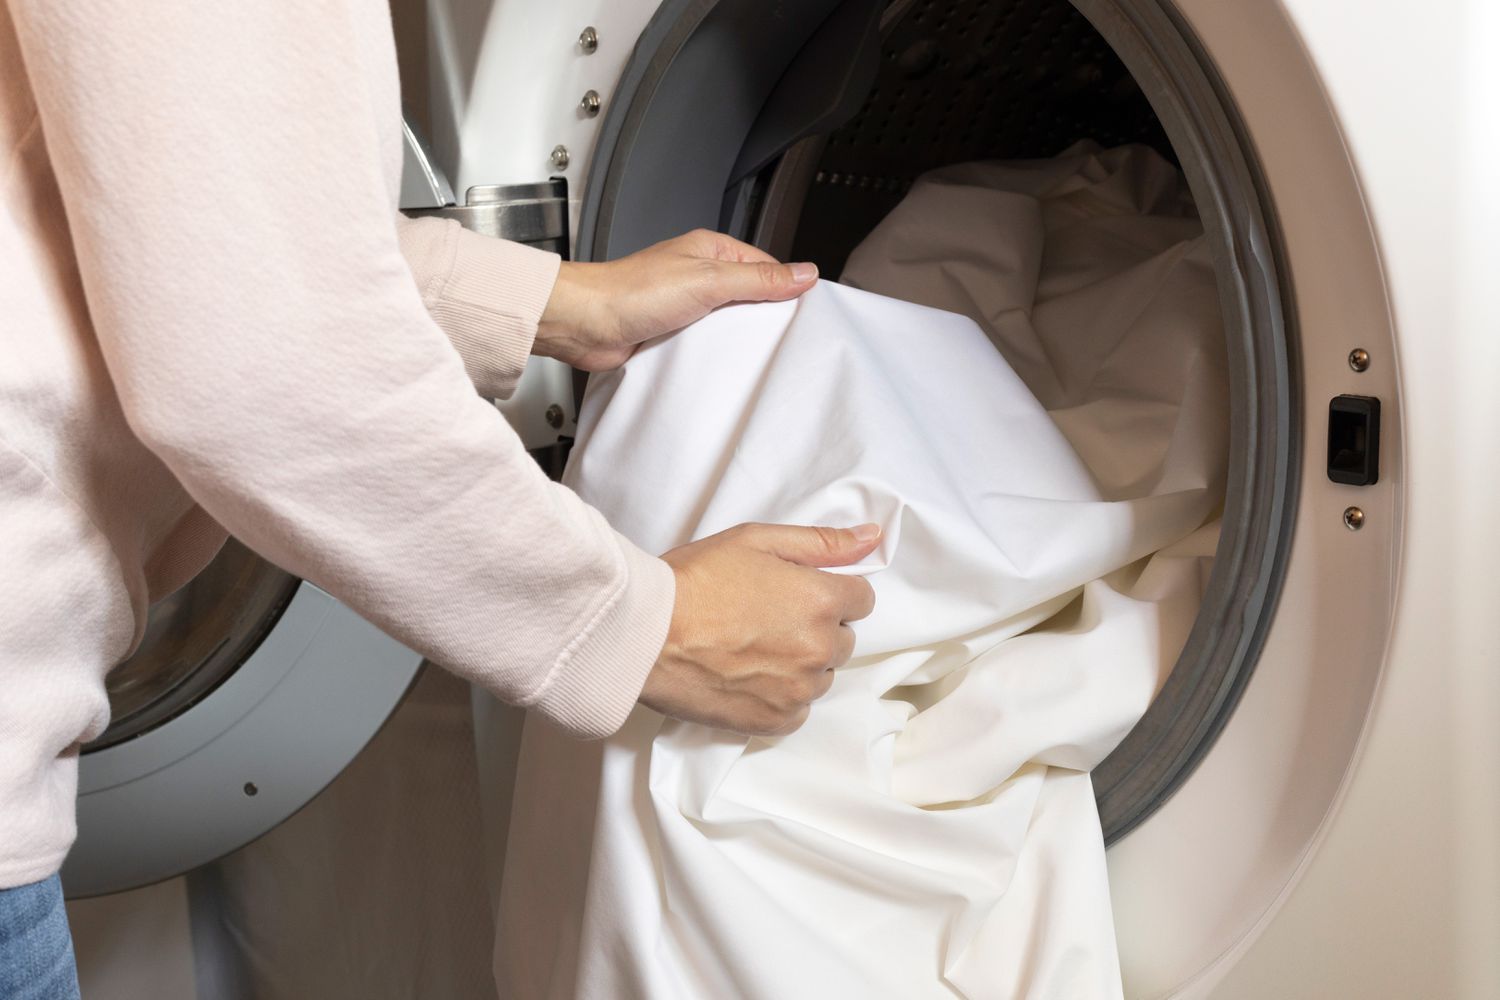 Roupa de cama coberta de ácaros colocada na máquina de lavar